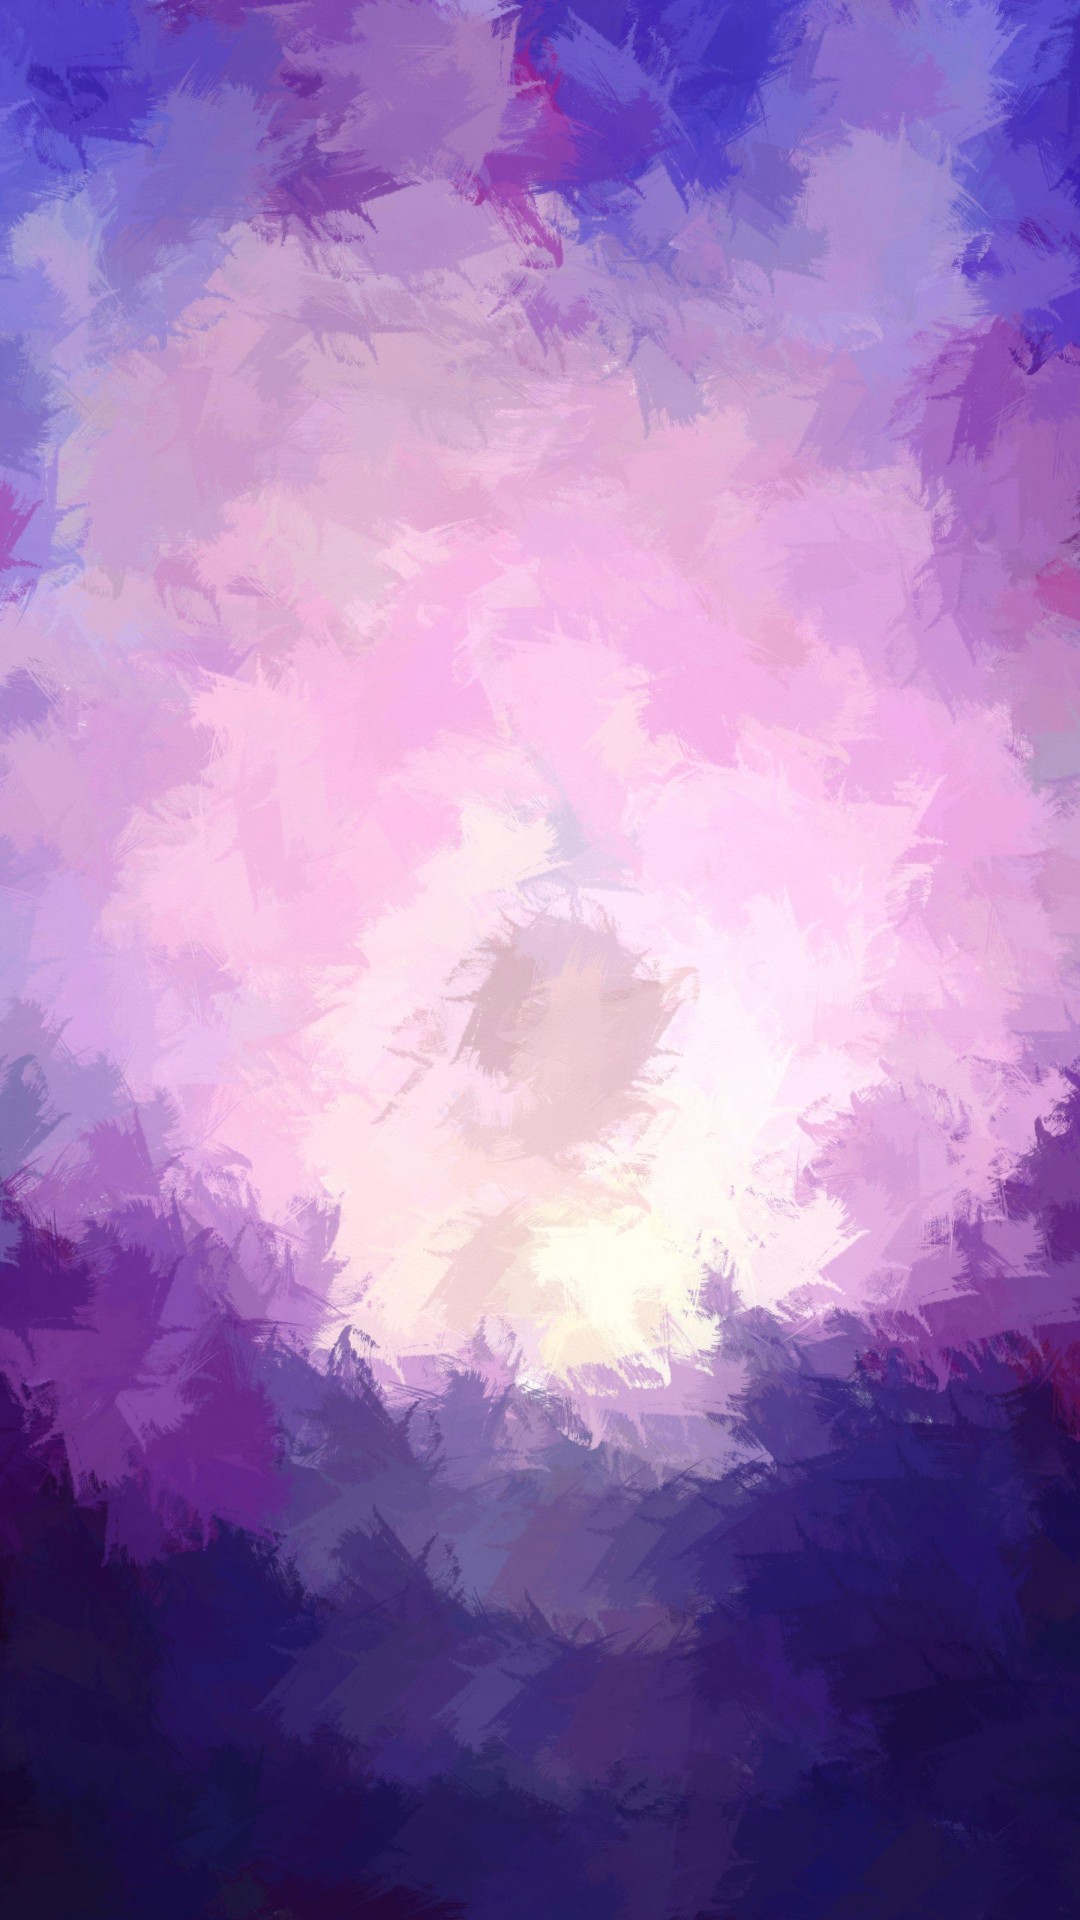 iphone 6 1080pのhd壁紙,空,バイオレット,紫の,雲,昼間